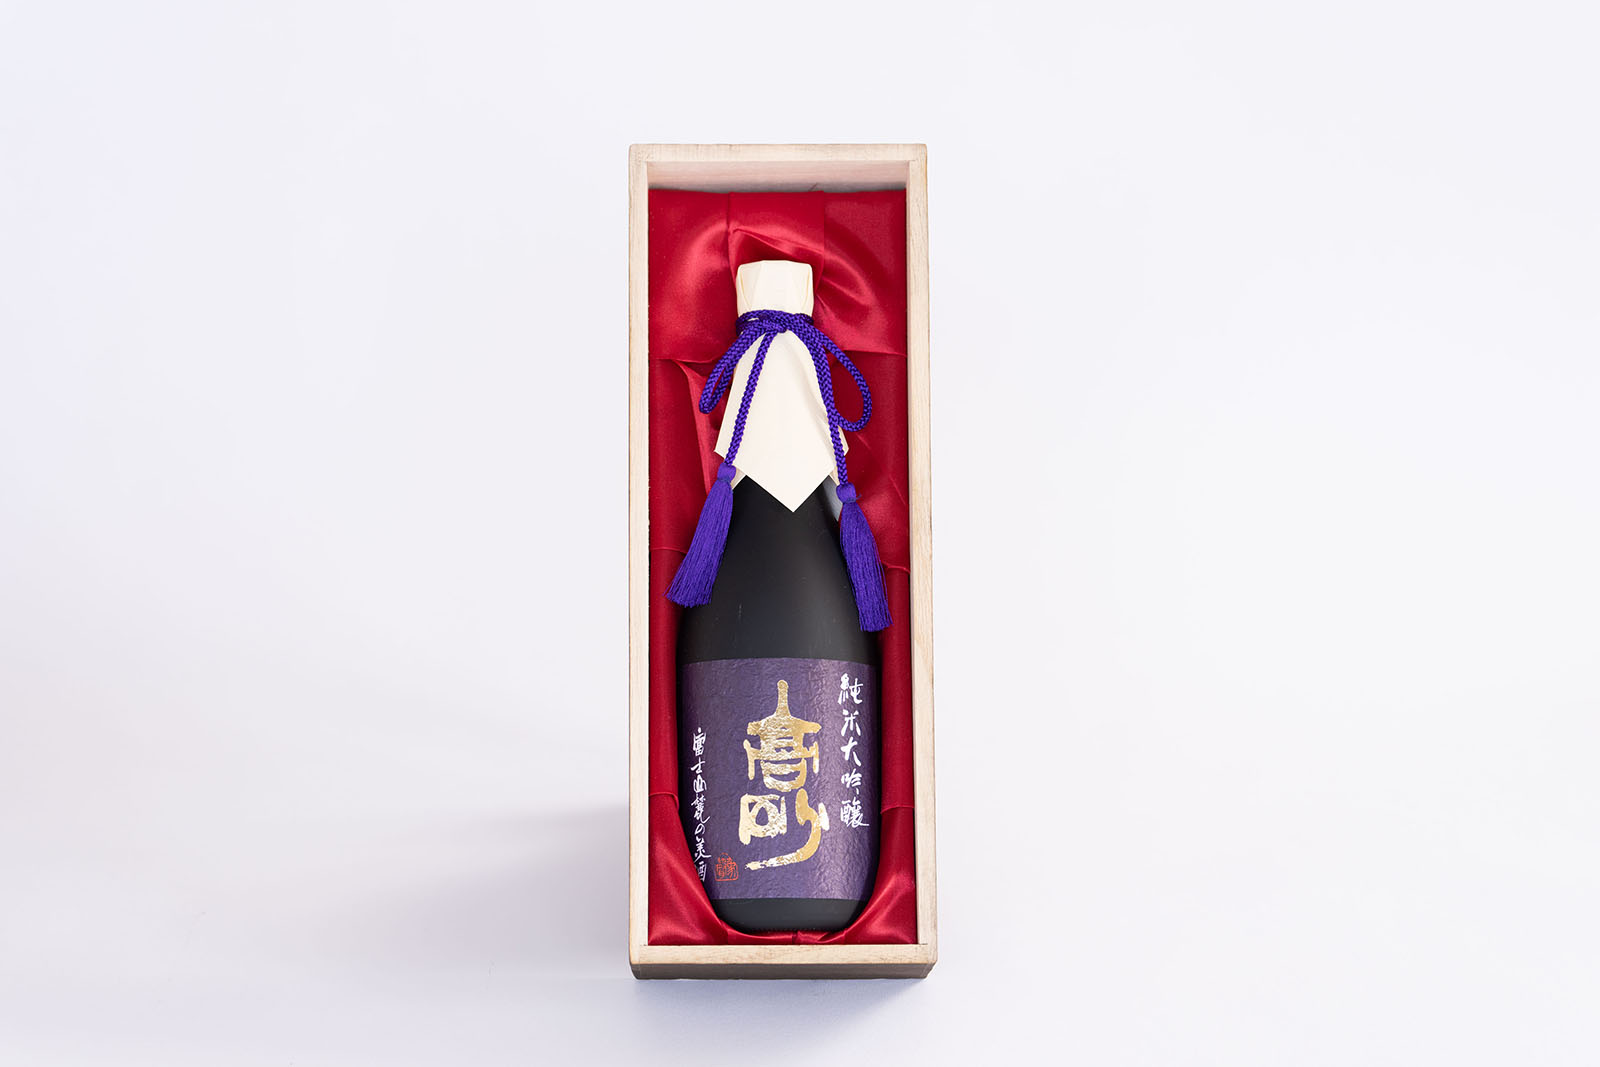 0020-01-02　富士宮の日本酒 高砂 純米大吟醸 桐箱入 720ml